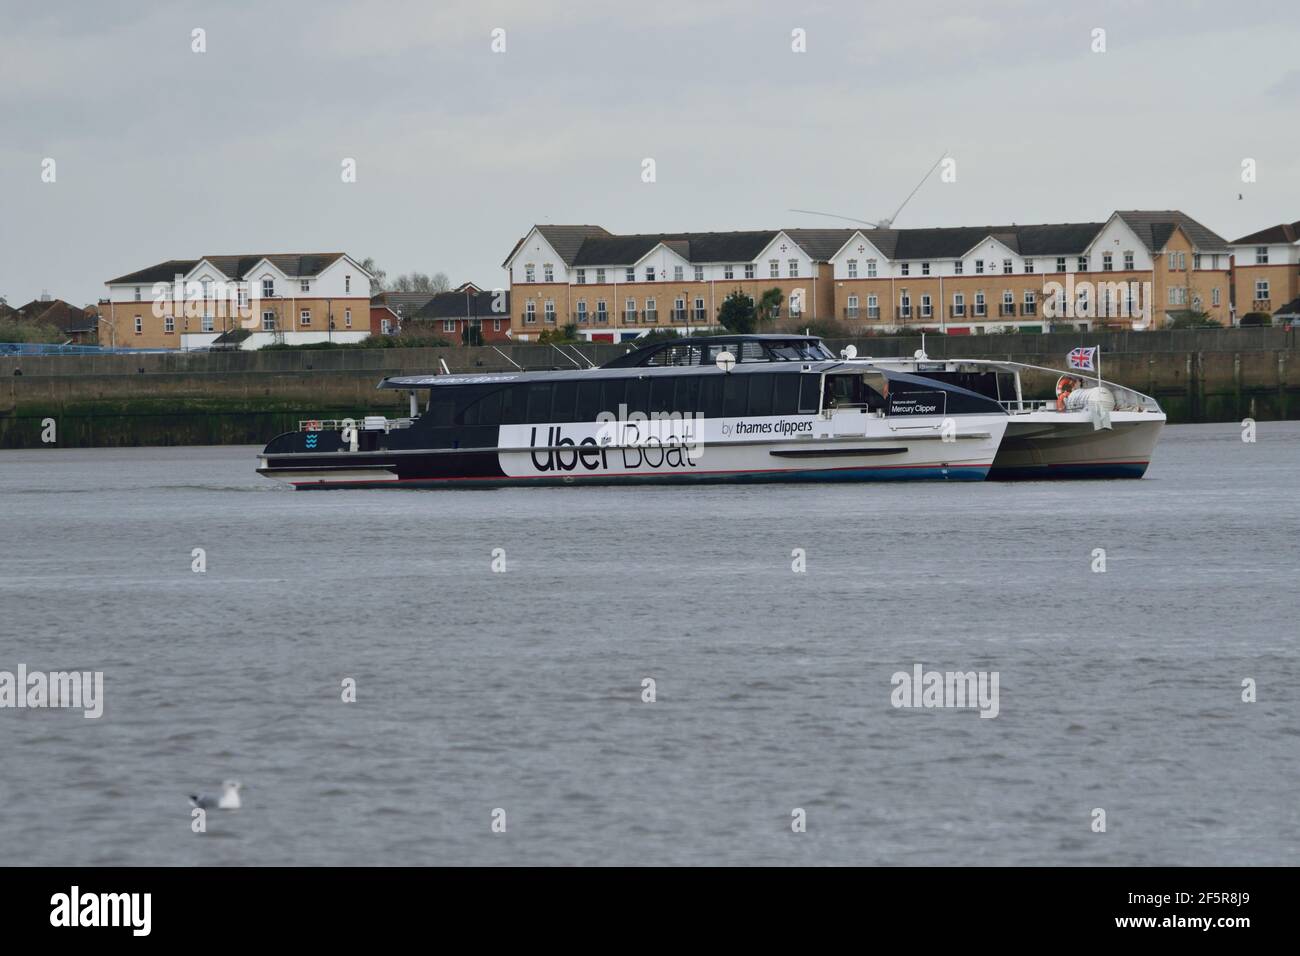 Uber Boot von Thames Clipper River Bus Service Schiff Mercury Clipper auf der Themse Stockfoto